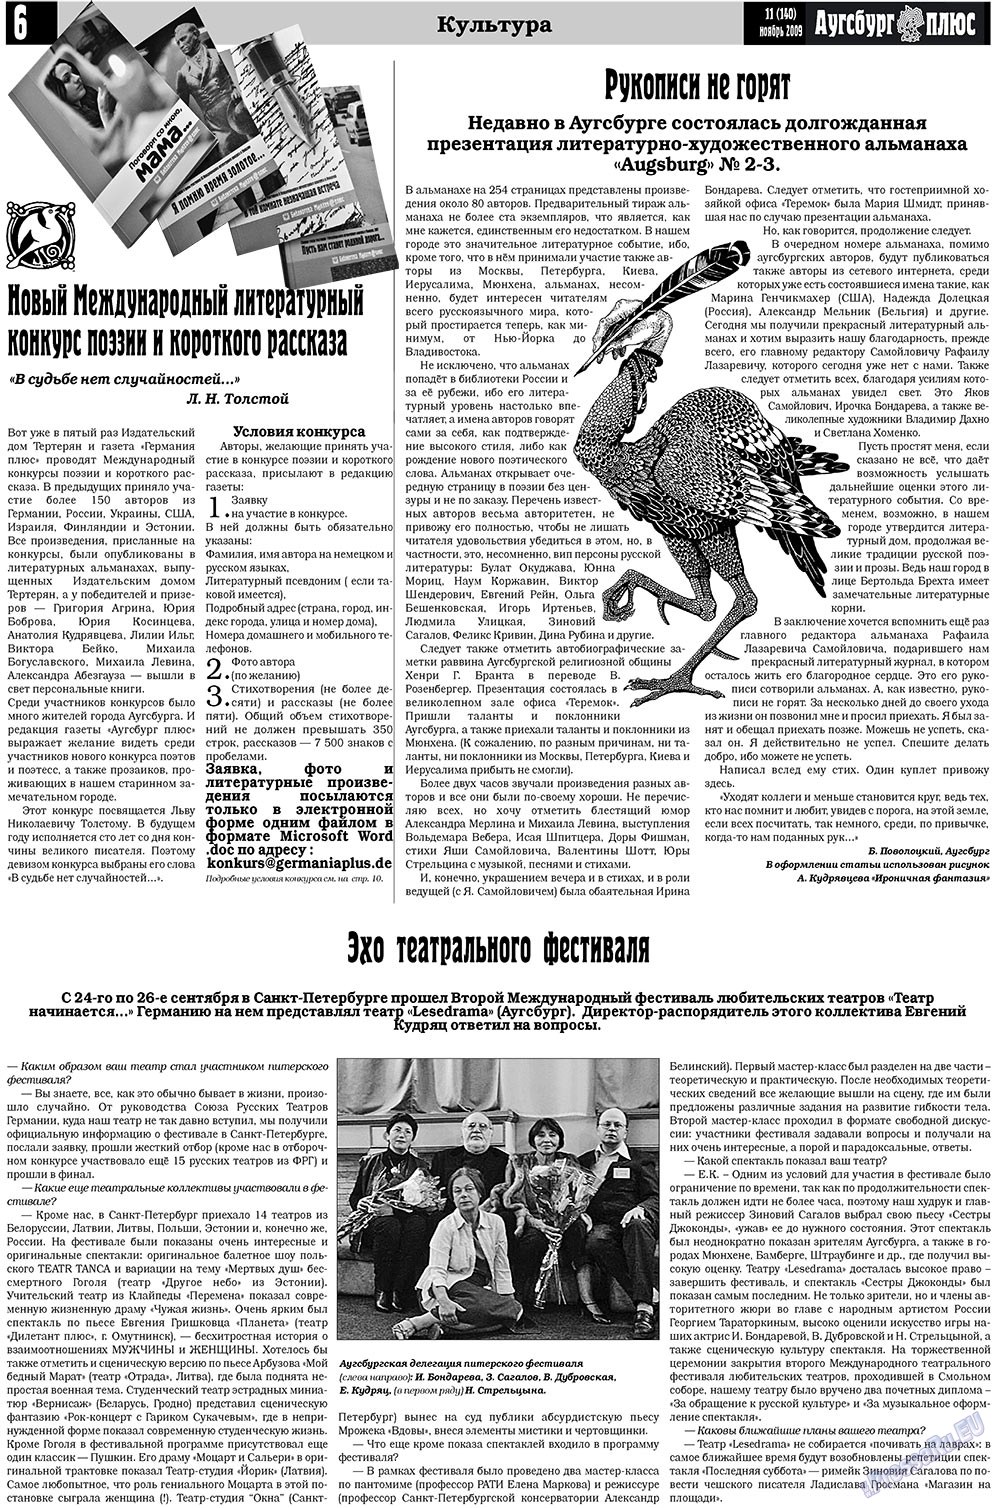 Германия плюс, газета. 2009 №11 стр.22